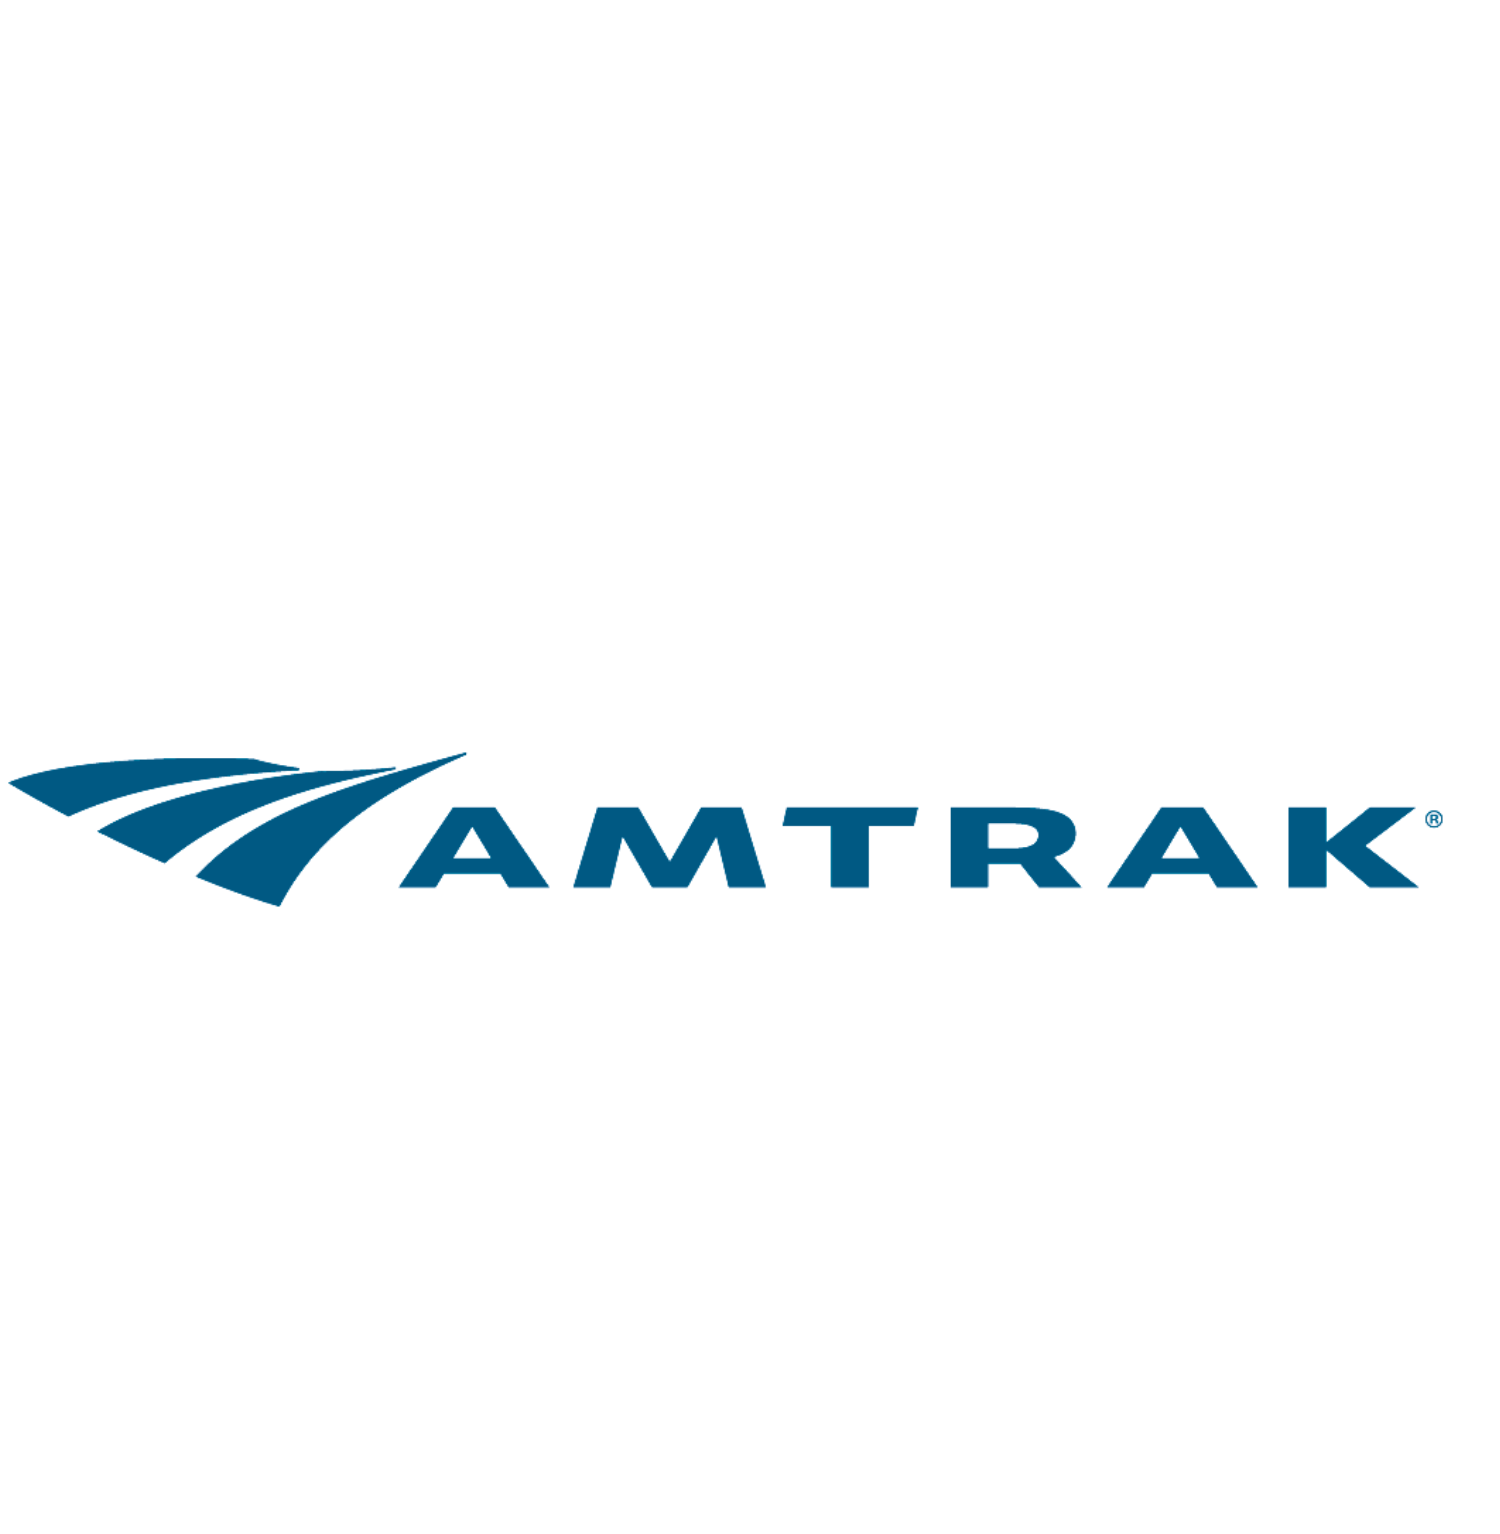 LARGE - Amtrak-1